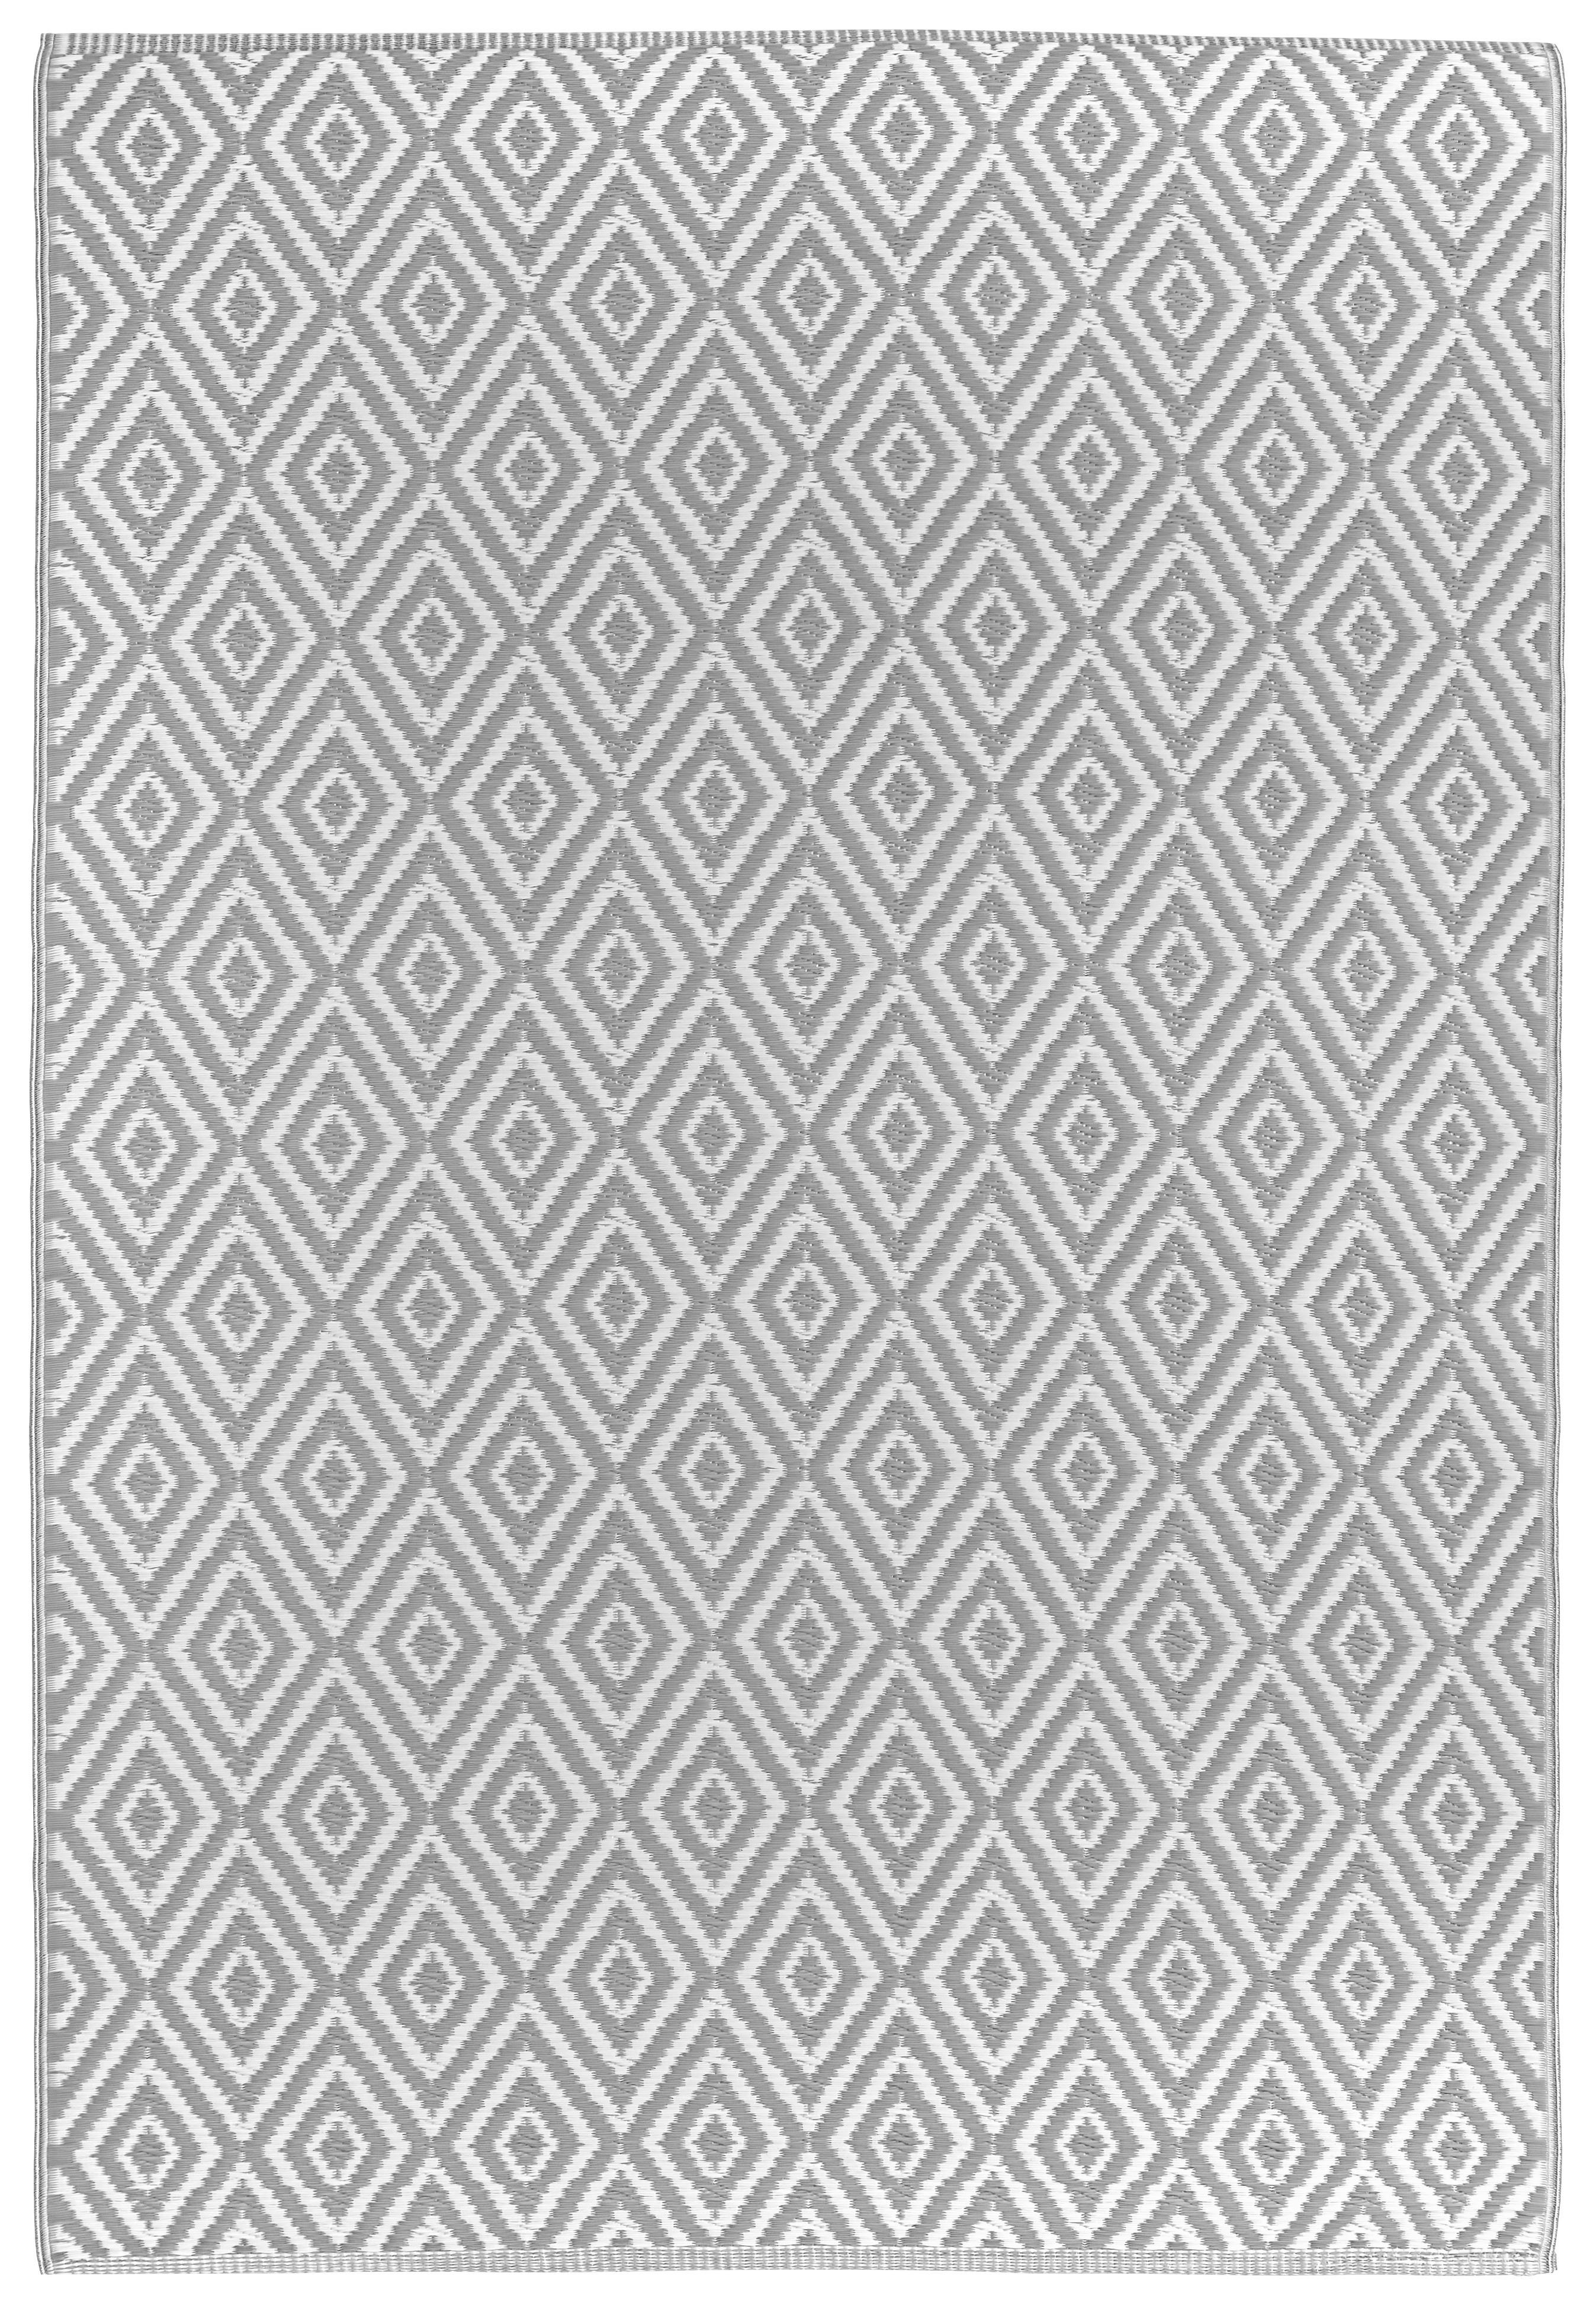 UTOMHUSMATTA Ibiza  - vit/grå, Trend, textil (90/150cm) - Boxxx